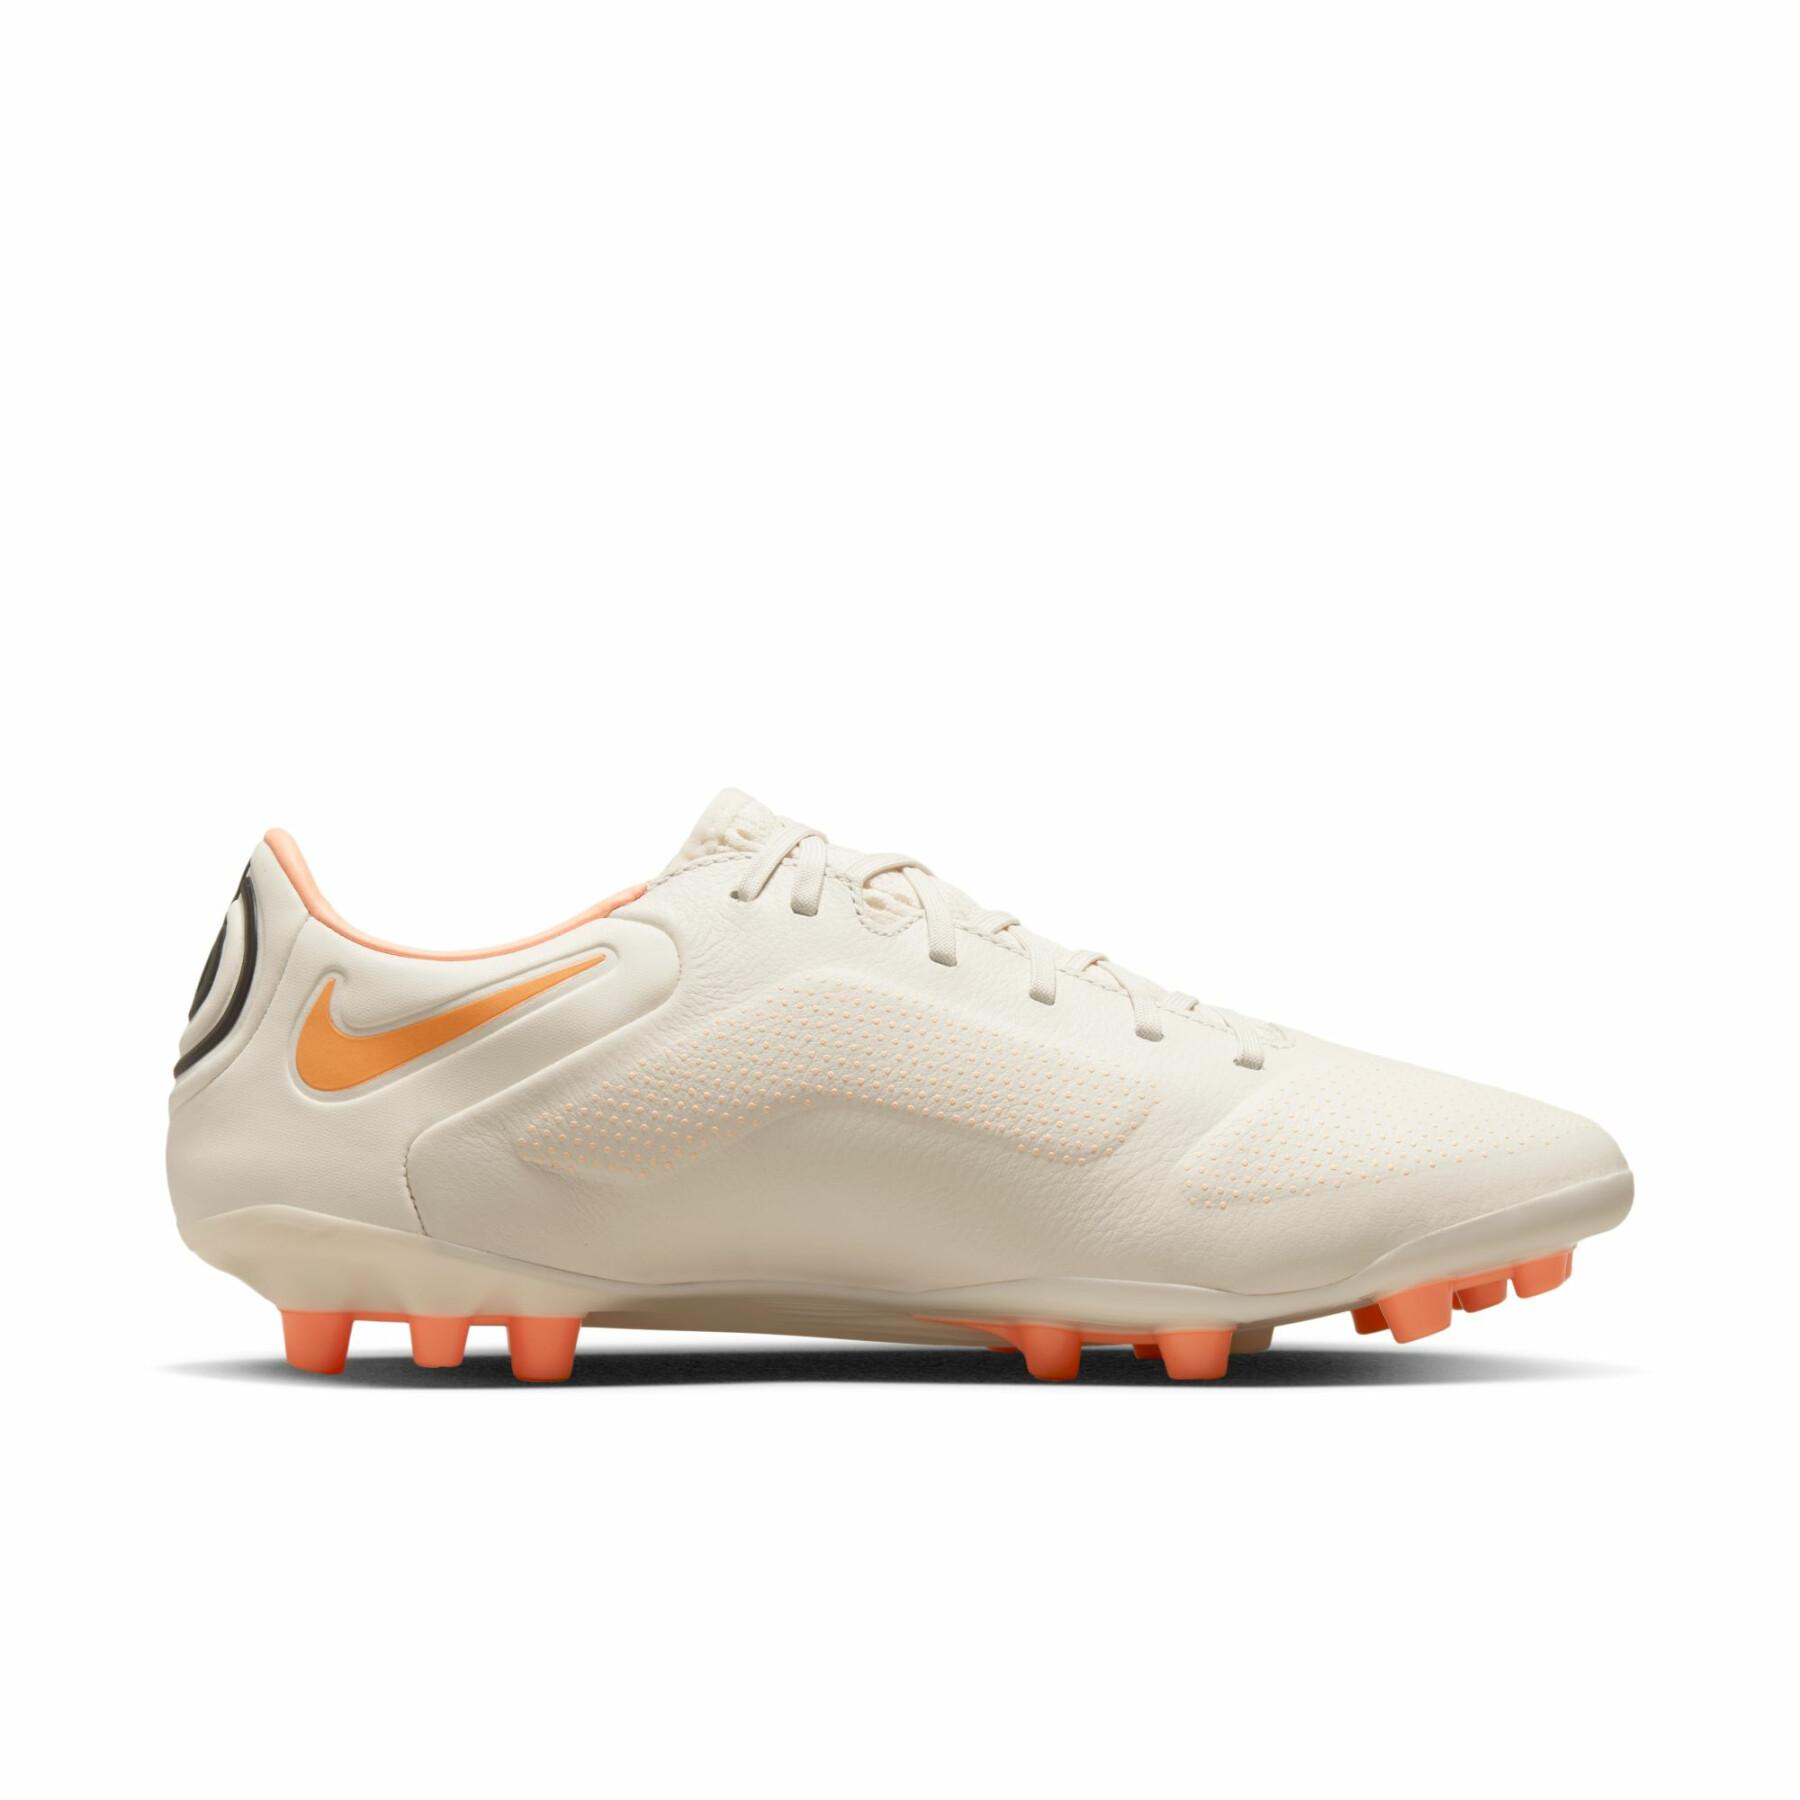 Botas de fútbol Nike Tiempo Legend 9 Pro AG-Pro - Lucent Pack